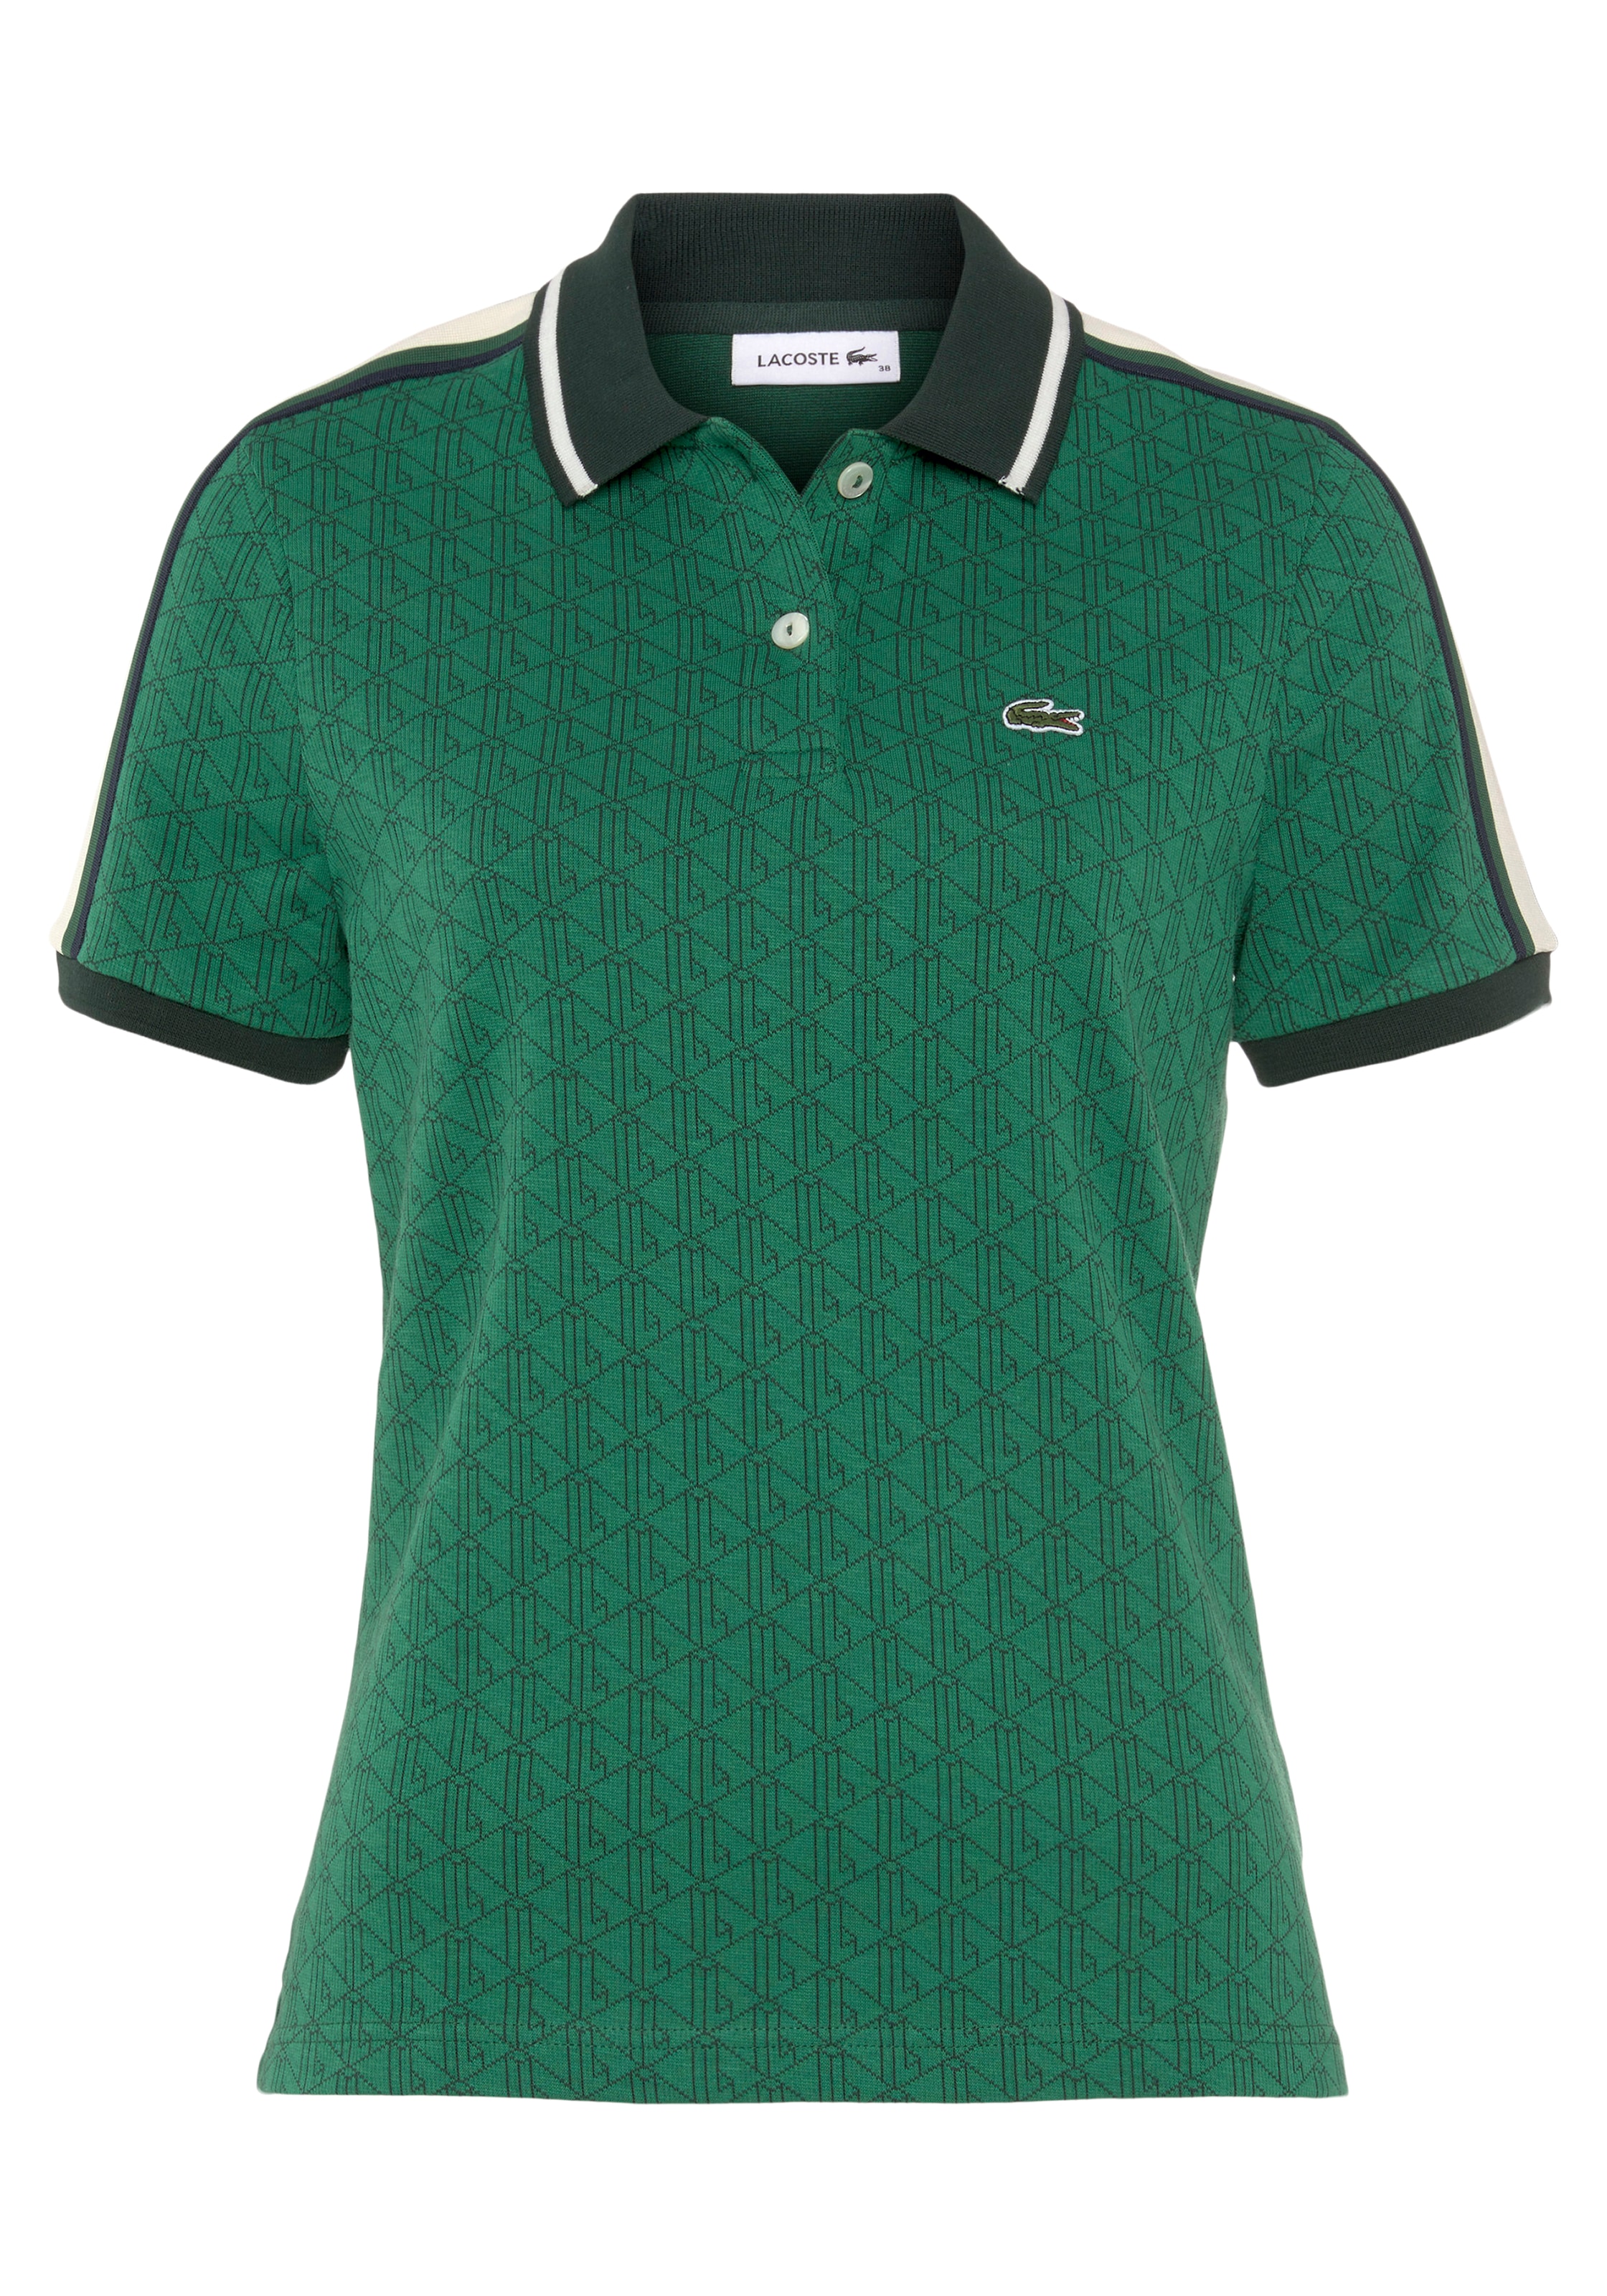 Online Kragen Poloshirt, Shop OTTO Lacoste am mit im Knopfverschluss